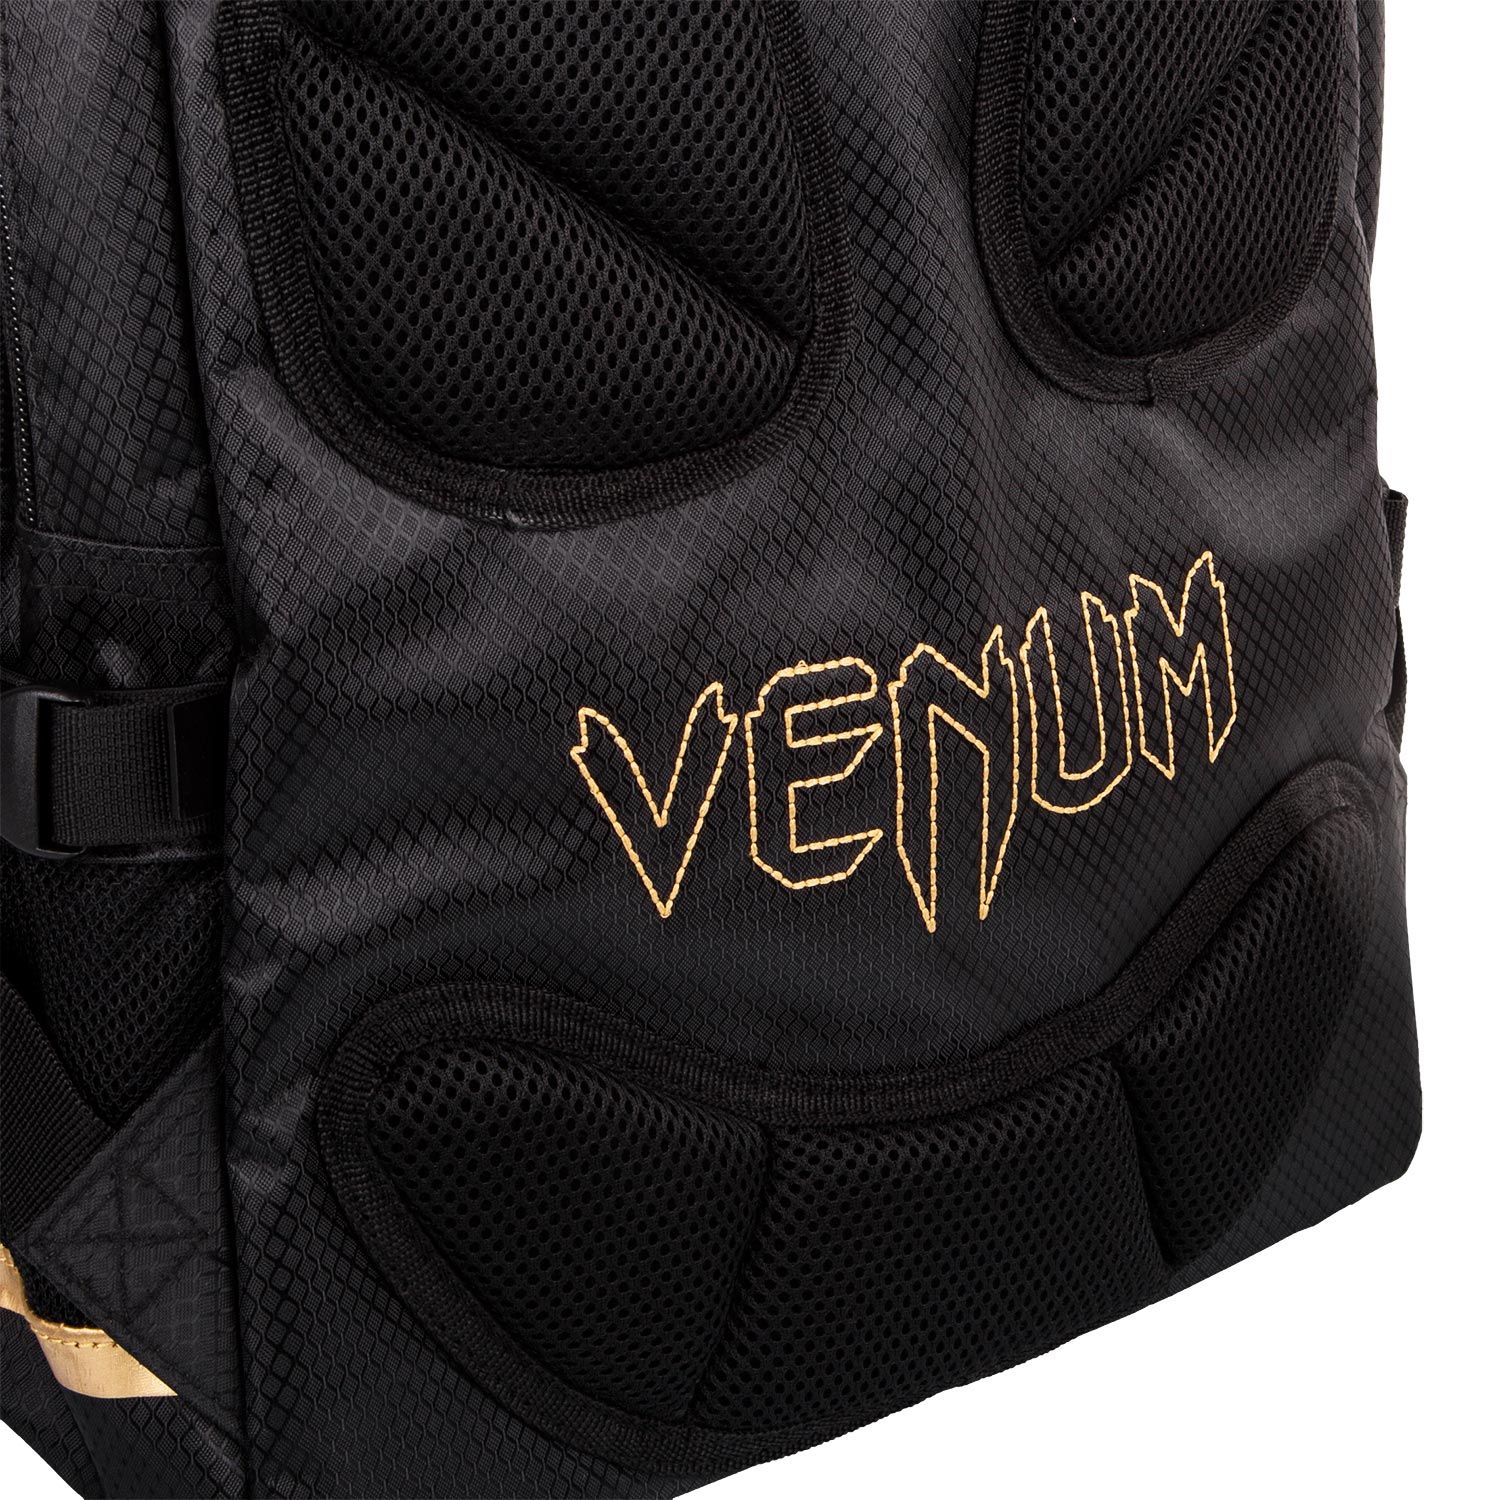 Venum チャレンジャー Pro バックパック - ブラック/ゴールド